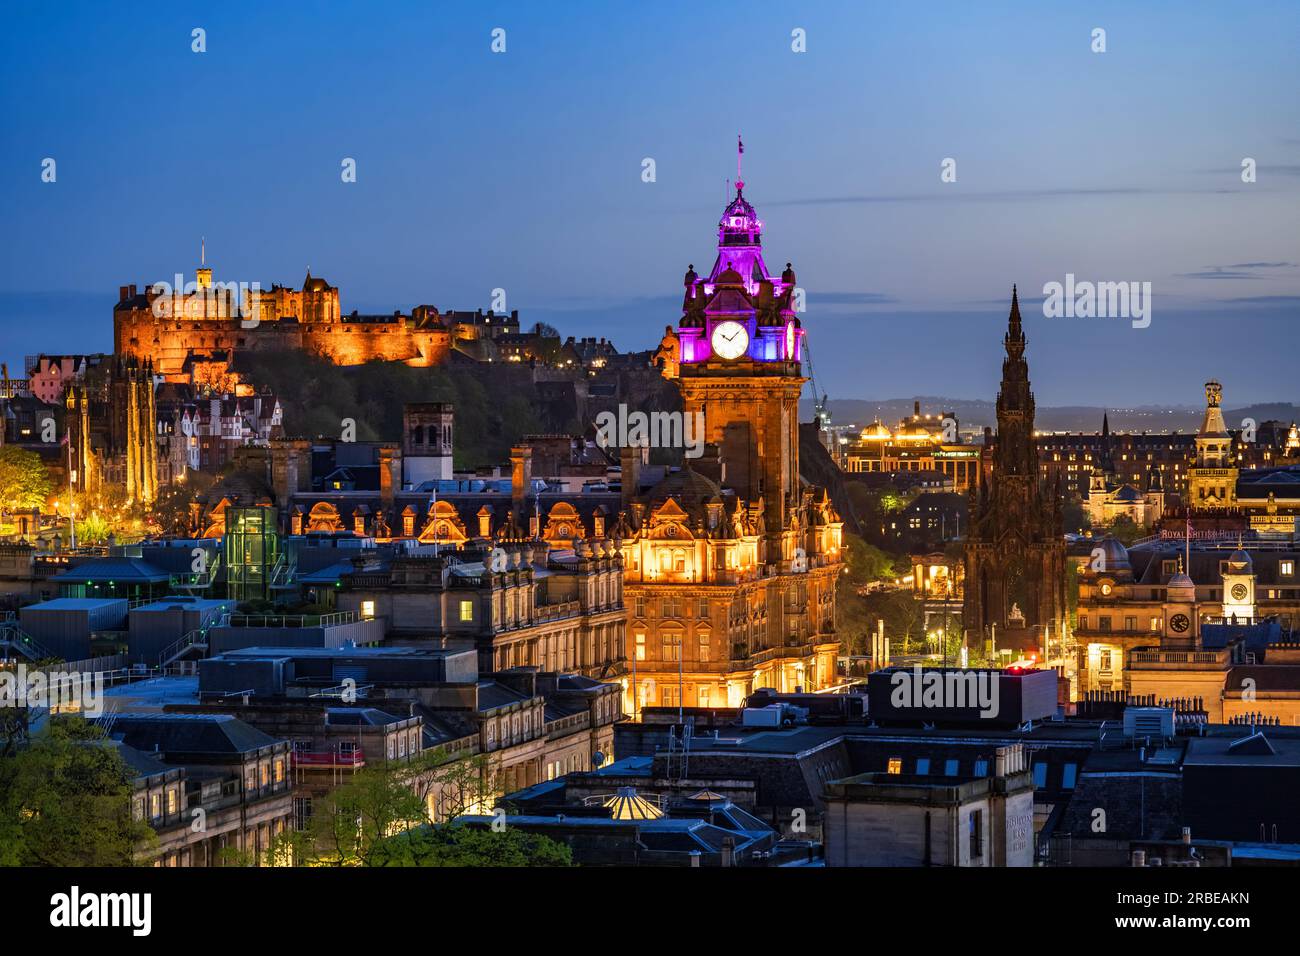 Skyline von Edinburgh bei Nacht in Schottland, Großbritannien. Abendliche Stadtlandschaft mit Edinburgh Castle, dem Uhrenturm des Balmoral Hotels und dem Scott Monument. Stockfoto